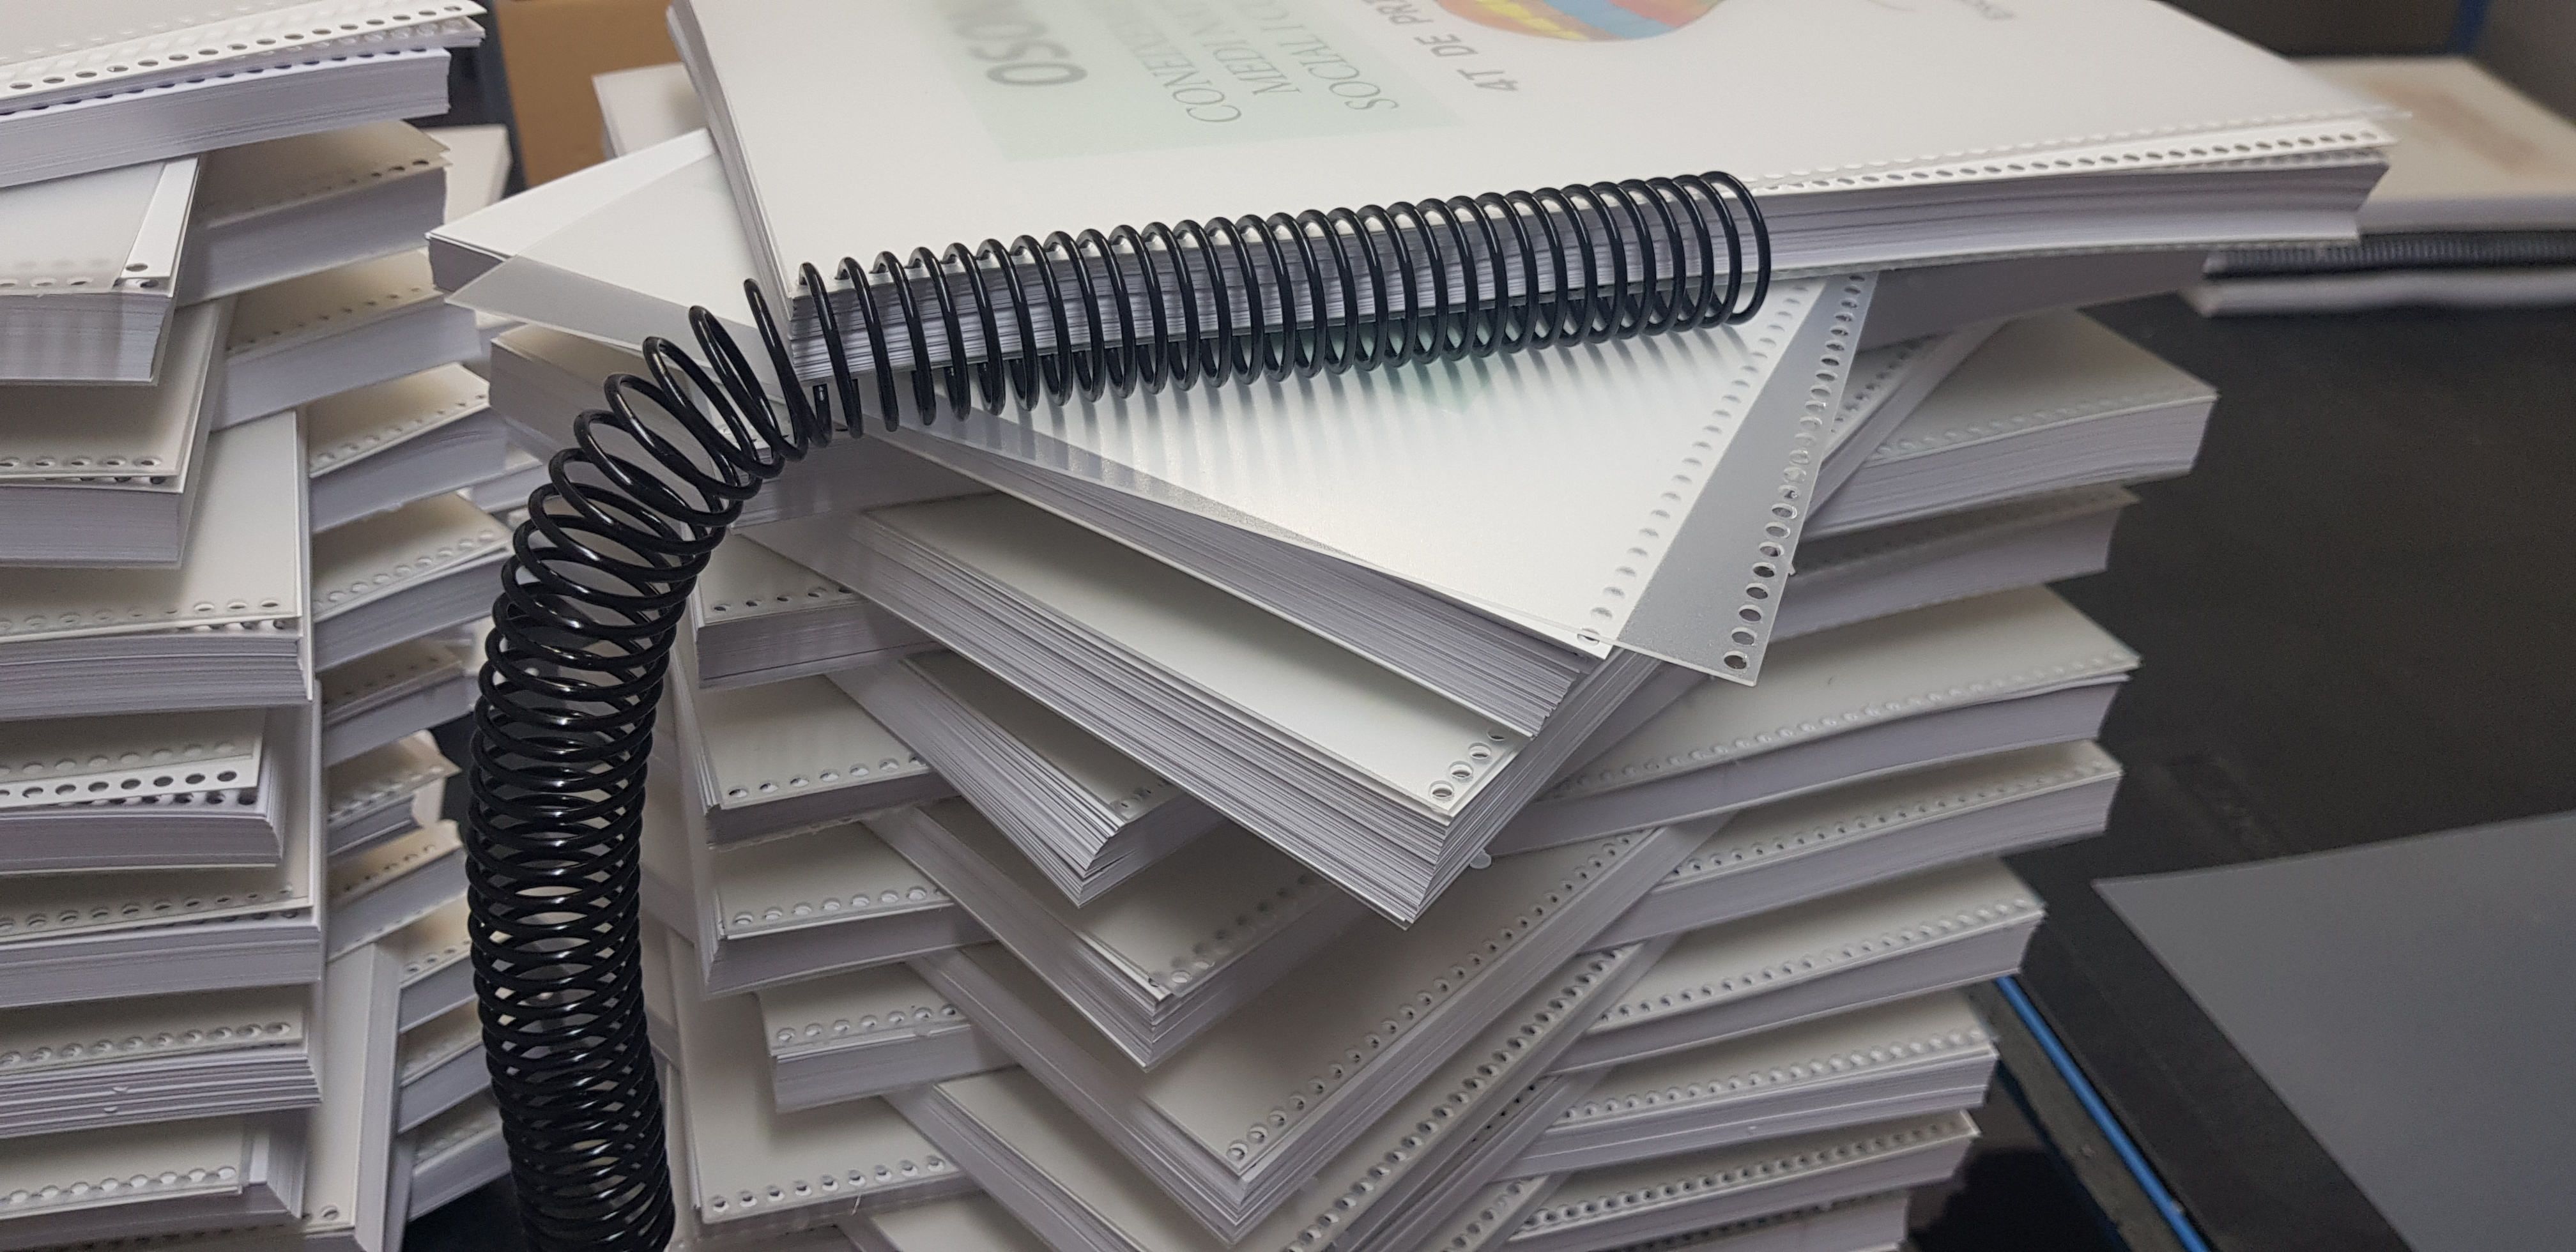 encuadernado-espiral-printcolor-cuadernos-manuales